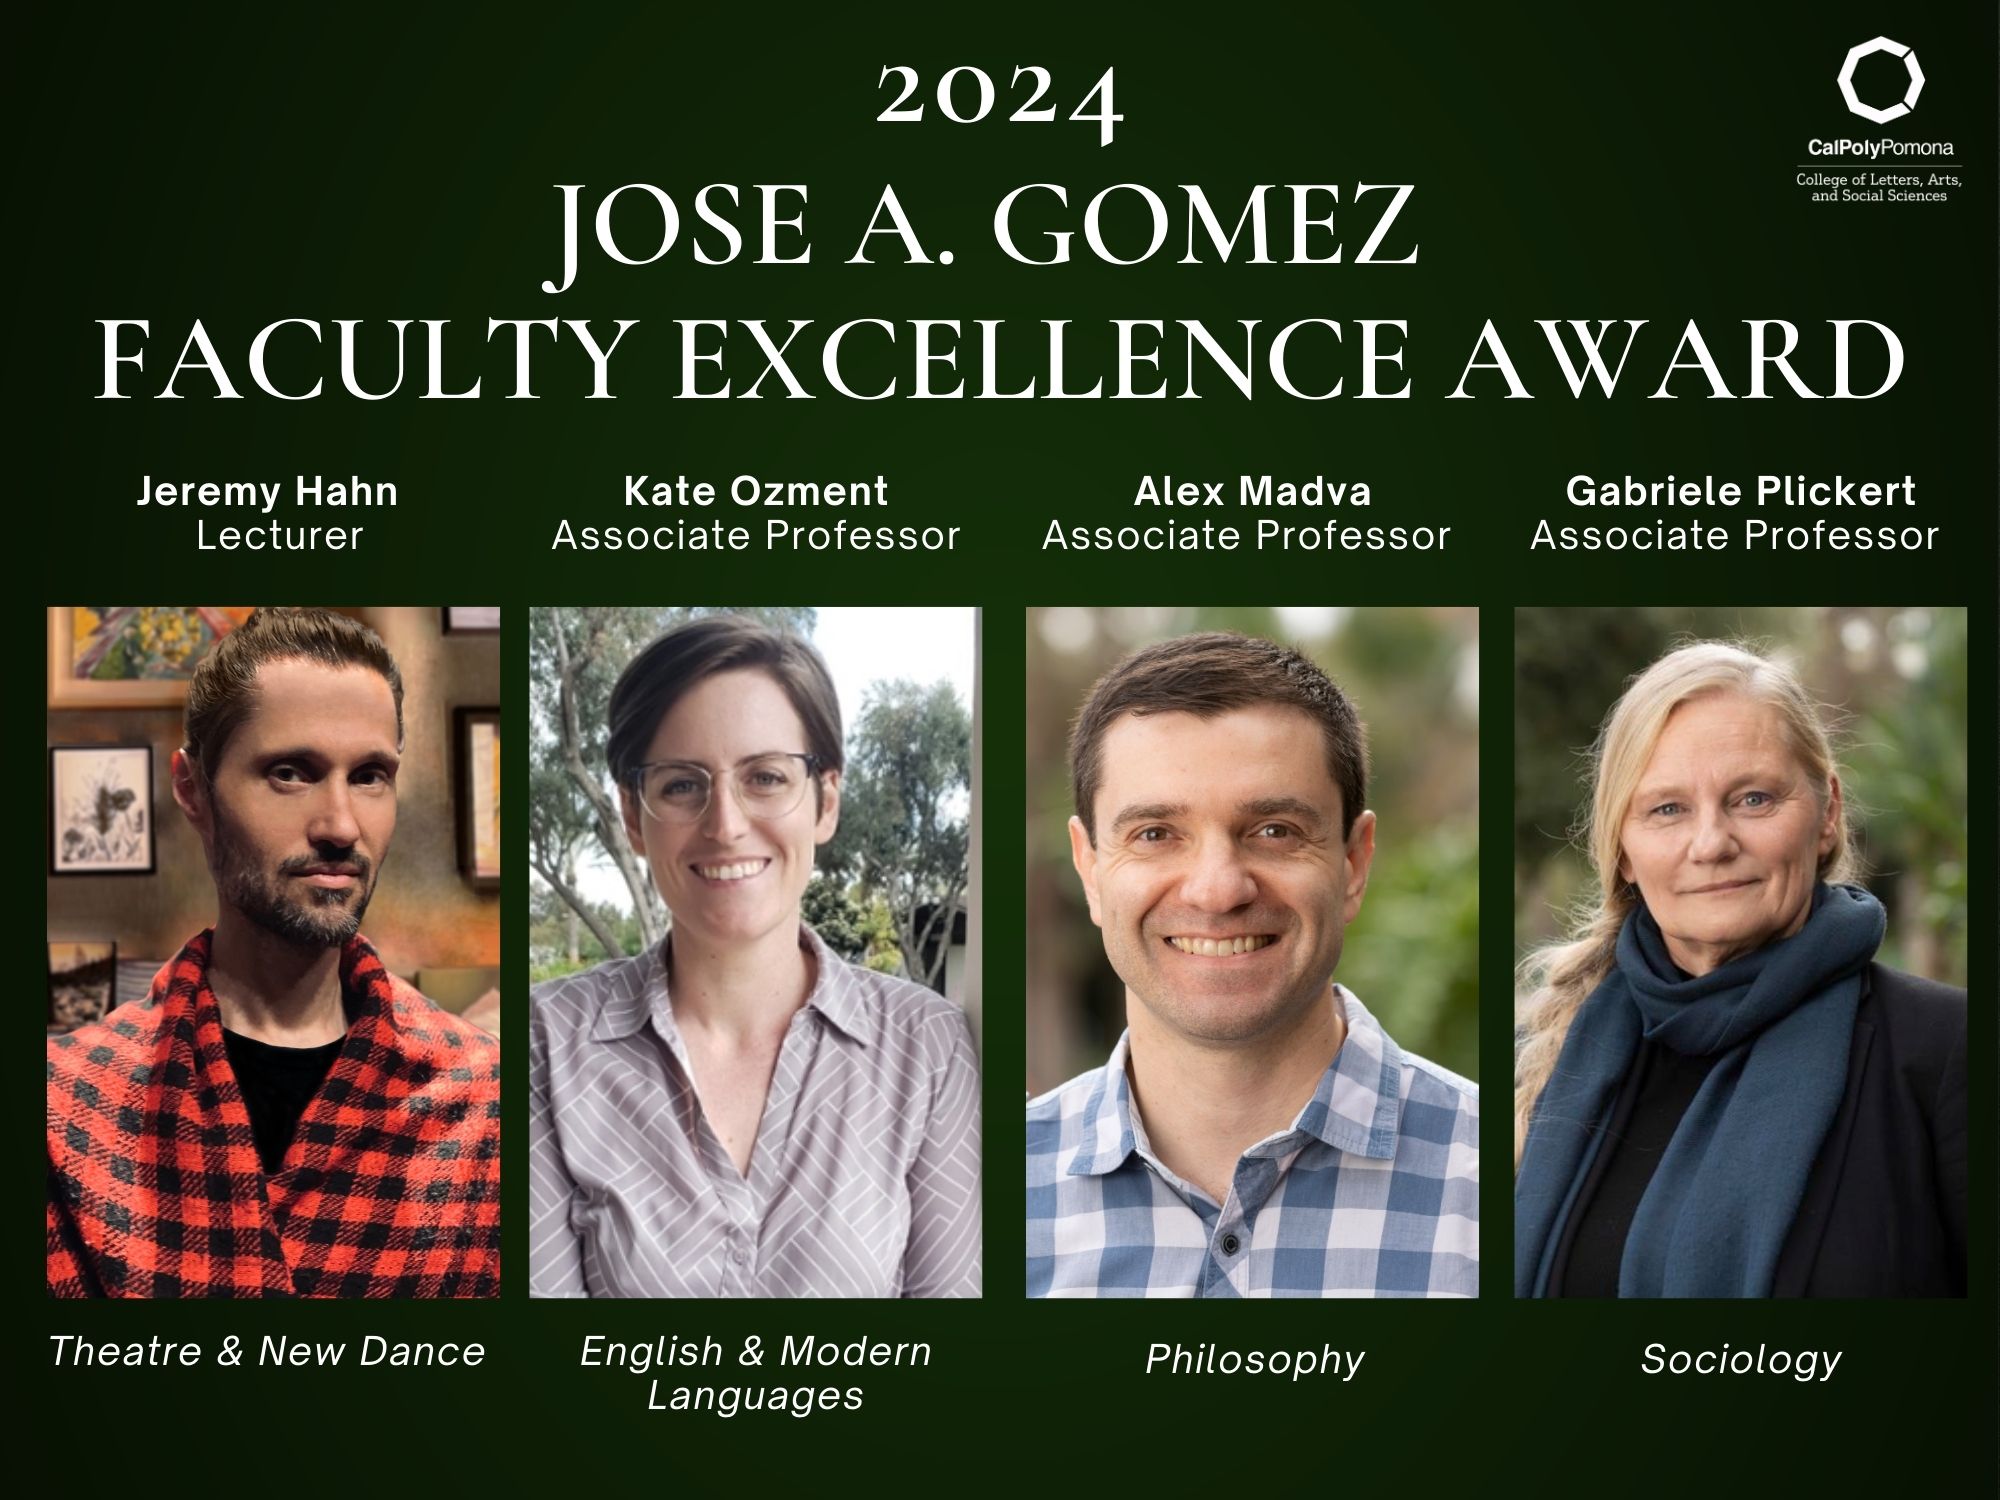 4 Faculty award recipients